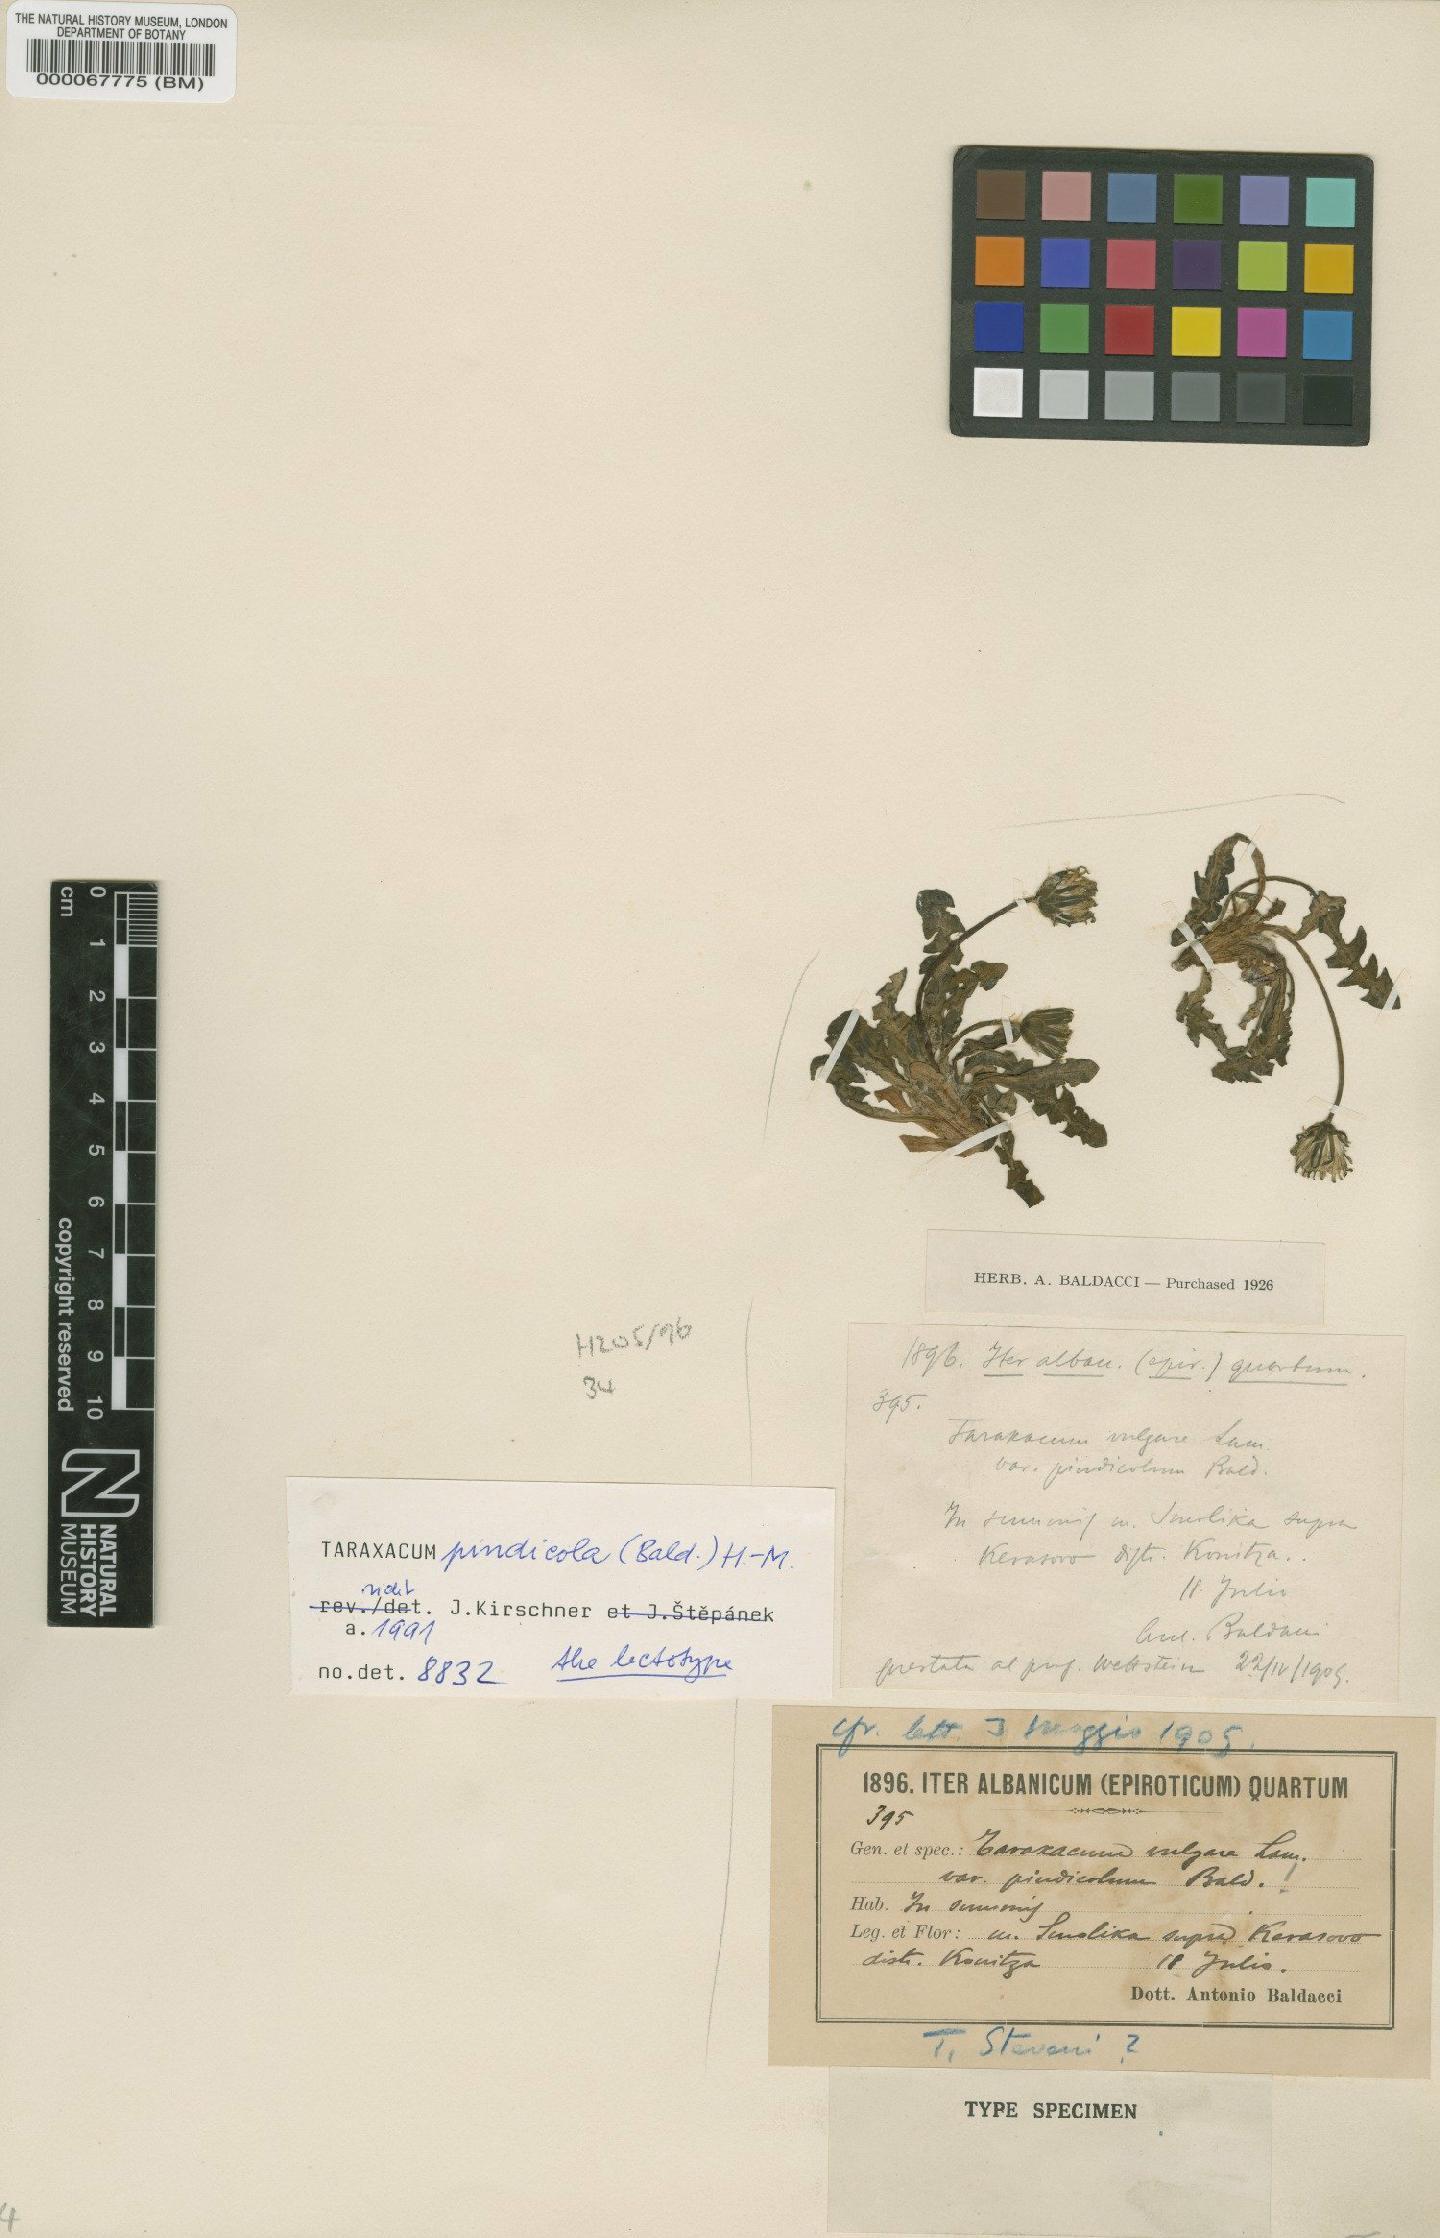 To NHMUK collection (Taraxacum pindicola Hand-Mazz; Isotype; NHMUK:ecatalogue:2201136)